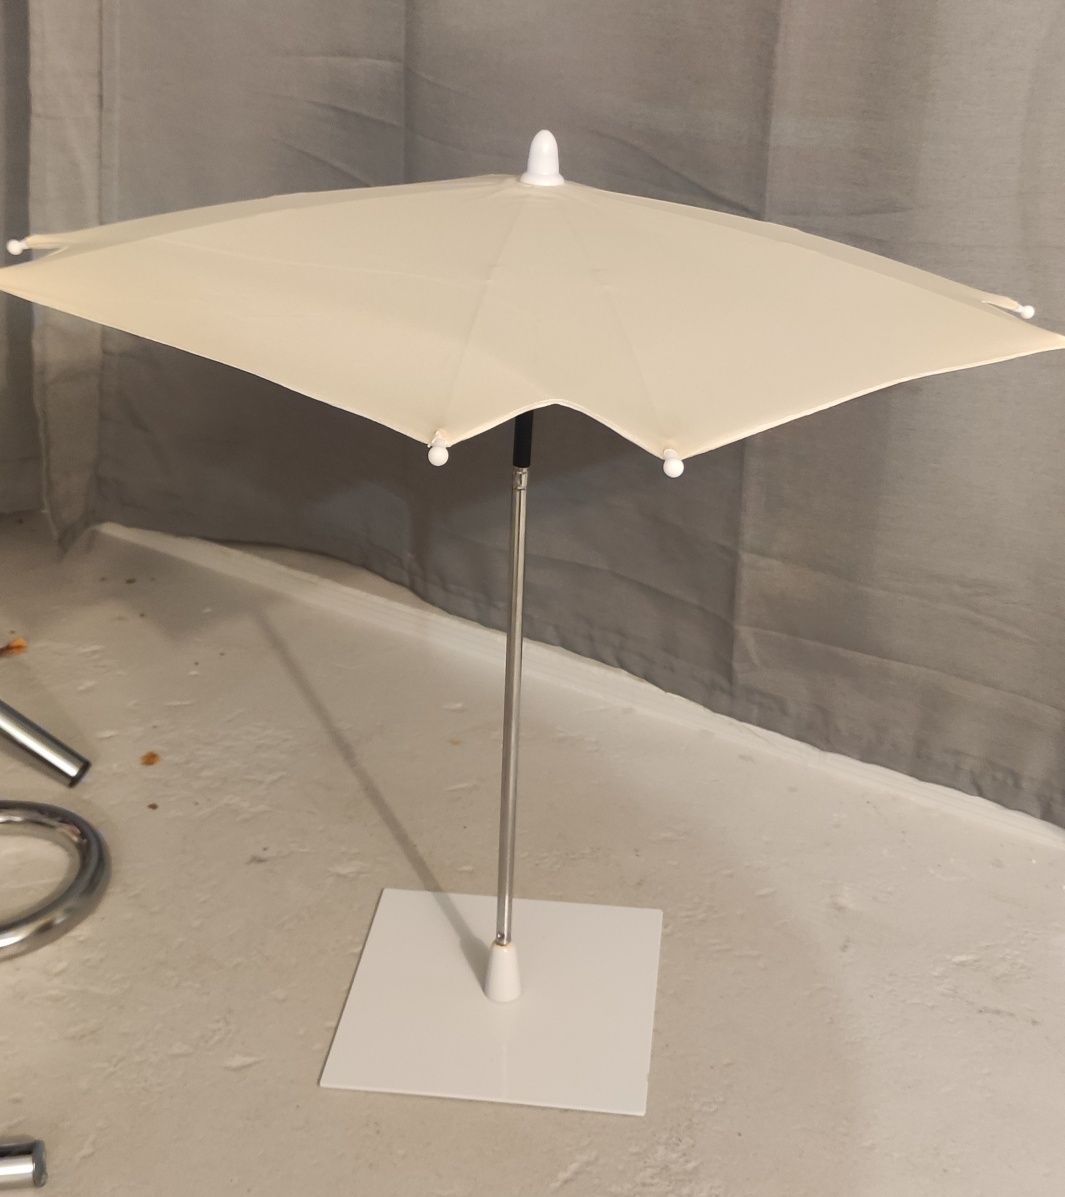 Parasolka przeciwsłoneczna na stolik do czytania